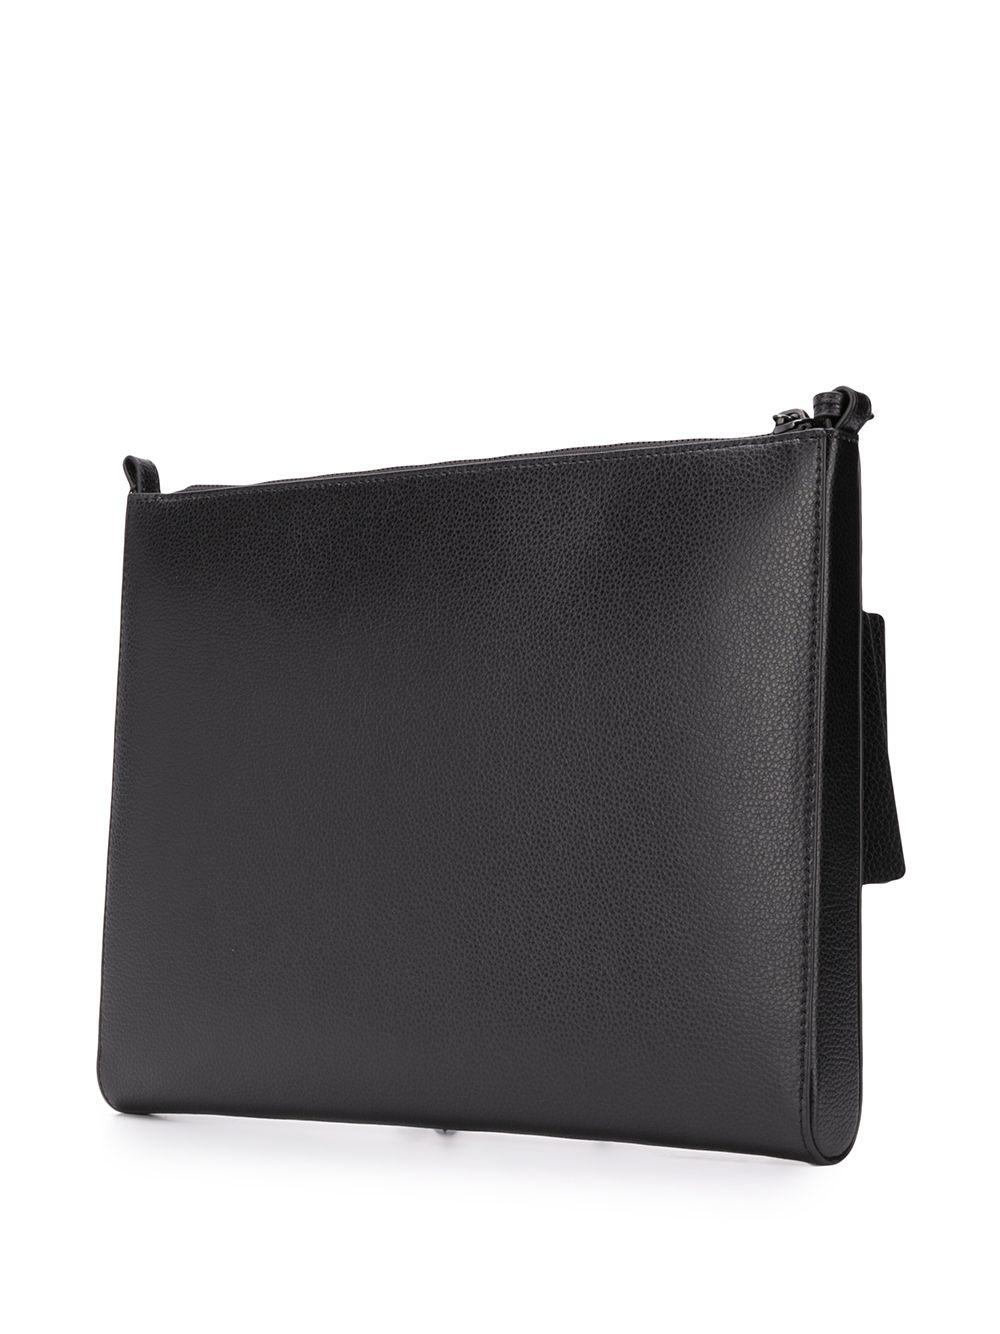 Emporio Armani Wrist-strap Clutch Bag in Black for Men - Lyst